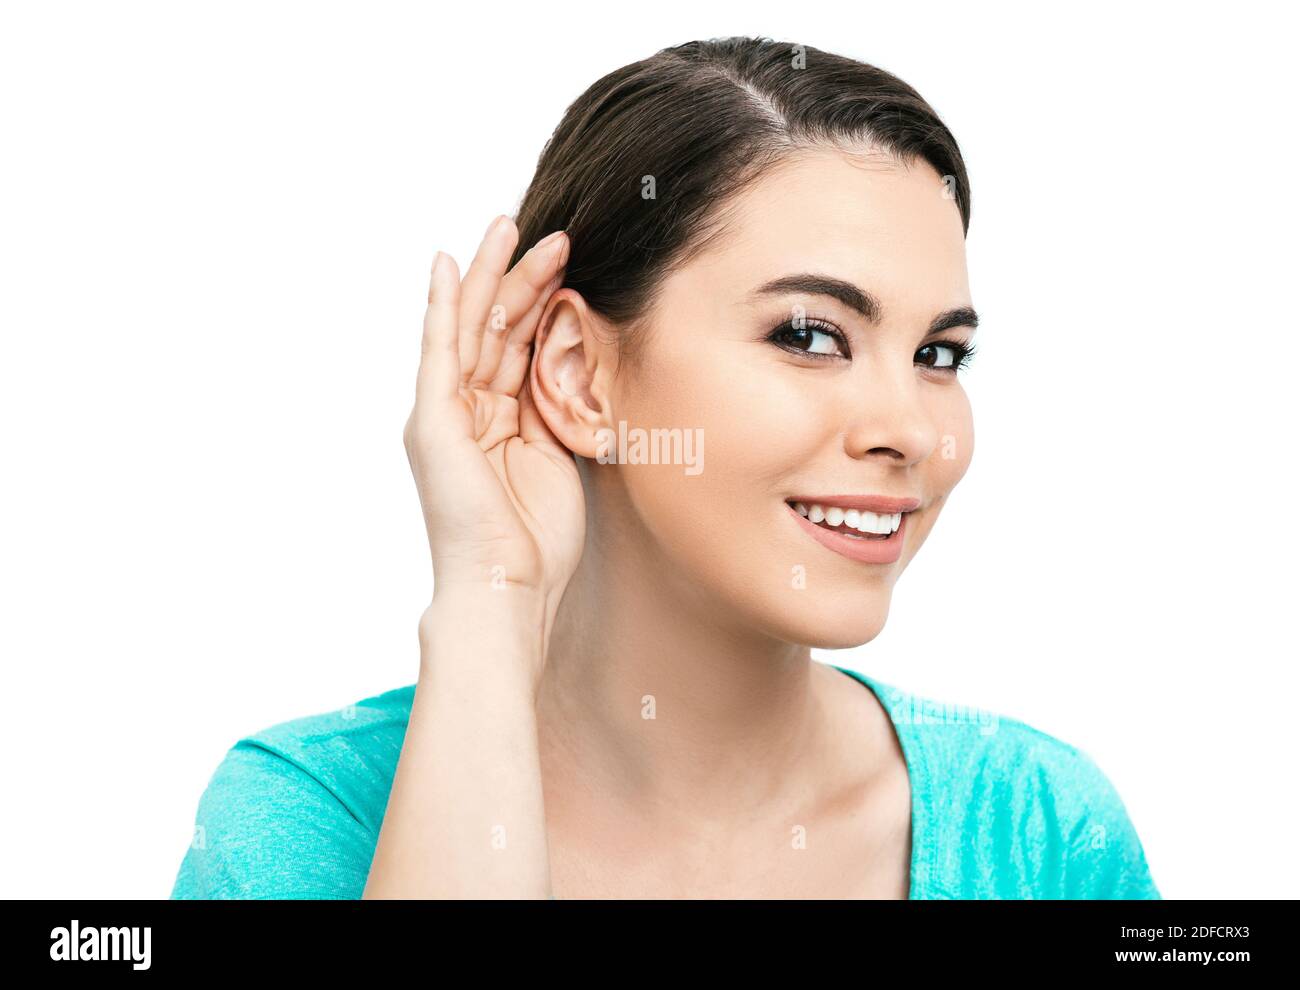 Concept de test auditif. Une femme hispanique positive tient la main près de l'oreille, isolée sur fond blanc Banque D'Images